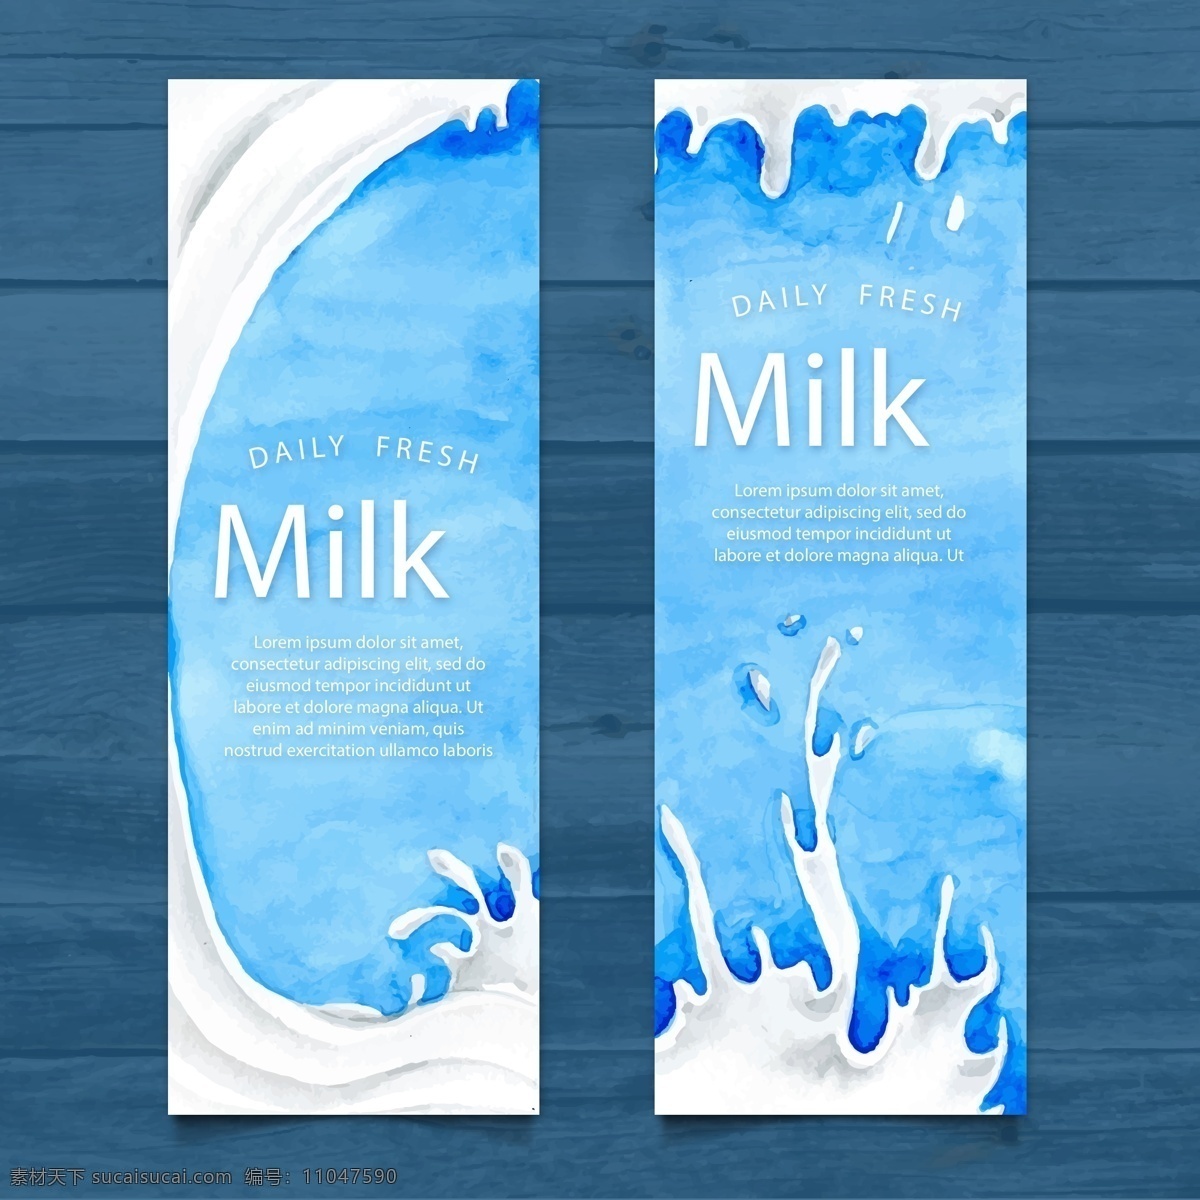 盒装牛奶 白色牛奶 奶牛 蓝色盒子牛奶 milk 杯子 豆奶 喷溅的牛奶 早餐 营养 食物 创意 广告 背景素材 海报素材 餐饮美食 传统美食 奶茶 水果汁系列 牛奶飞溅素材 包装设计